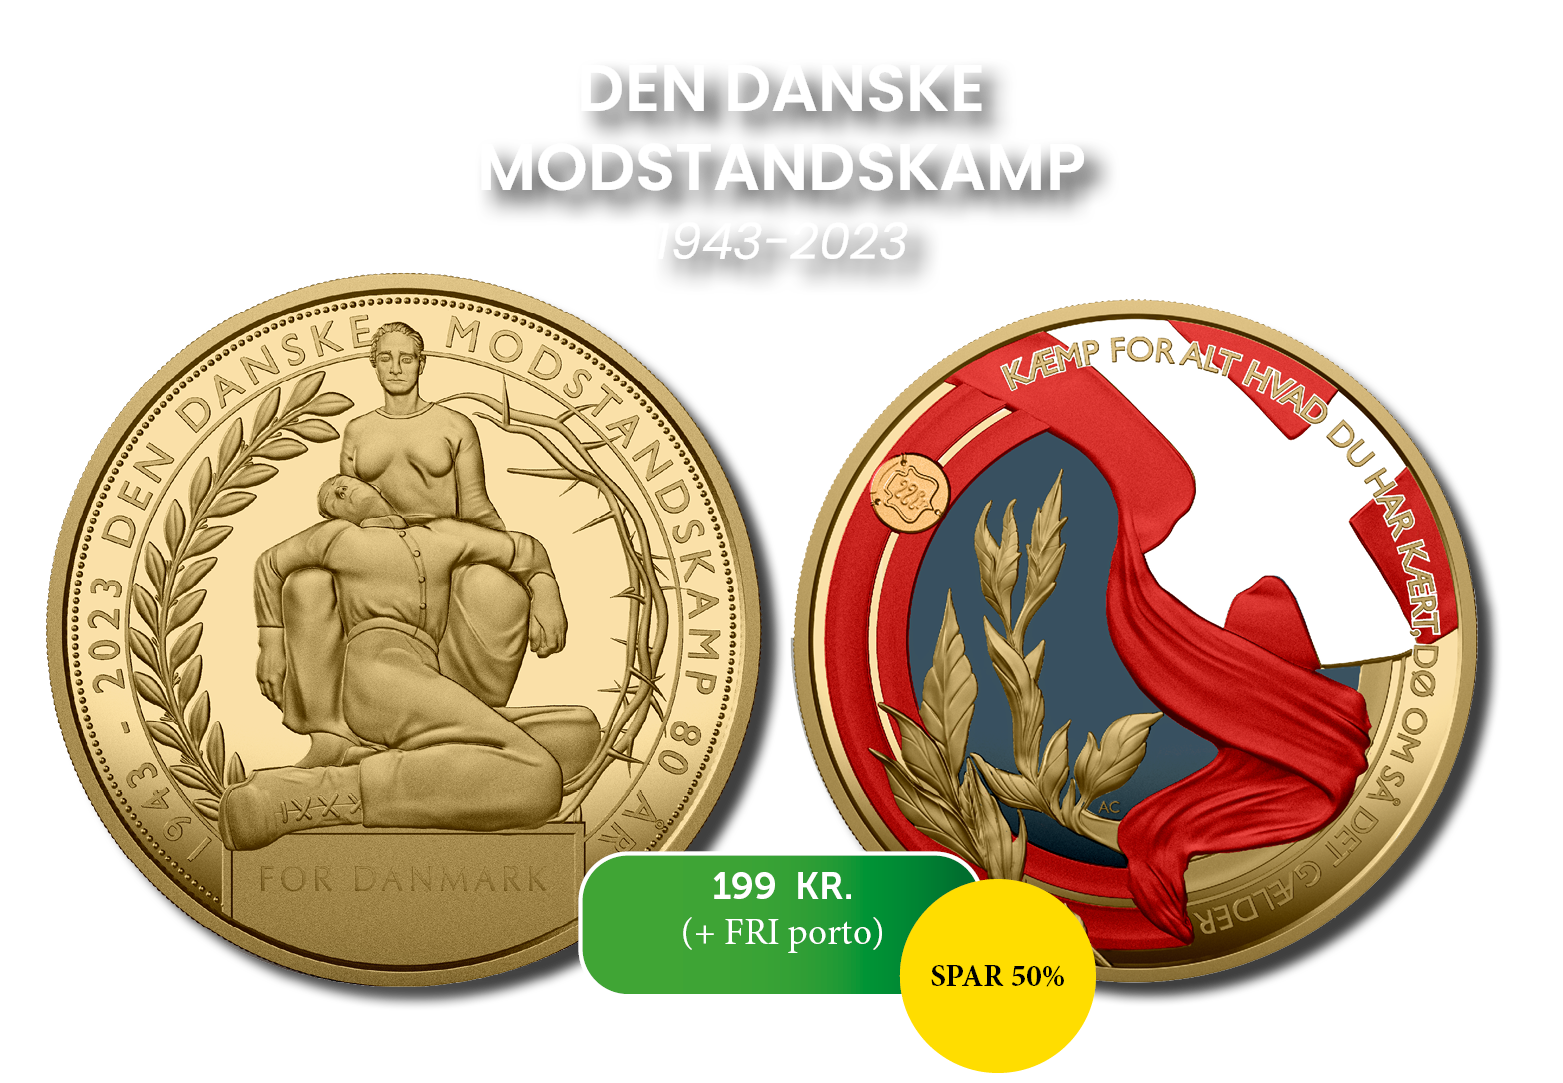 Den danske modstandskamp - forgyldt medalje med safir-, rubin- og diamantstøv